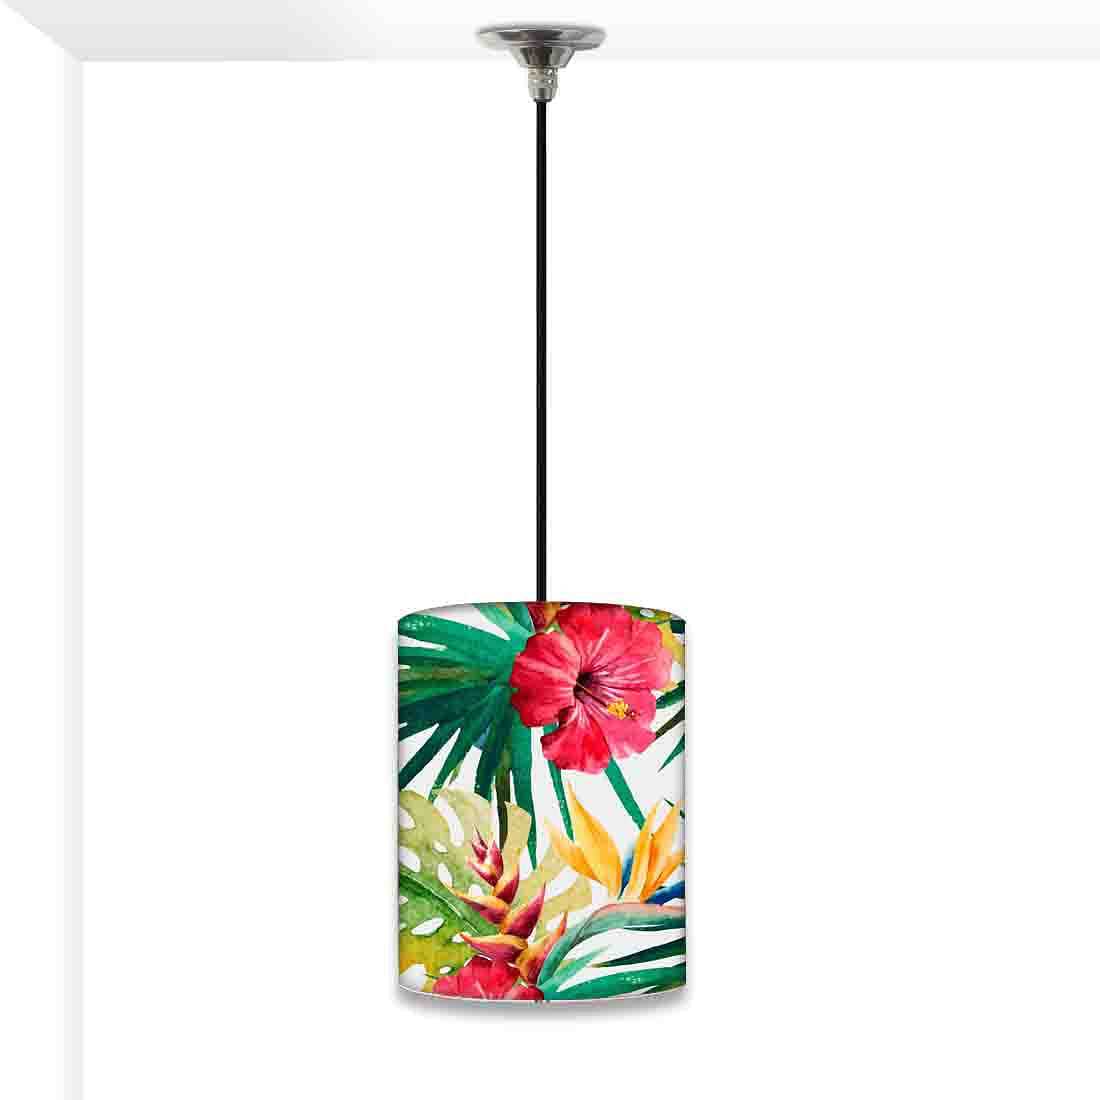 Designer Ceiling Lamps Lights for Bedroom - 0067 Nutcase